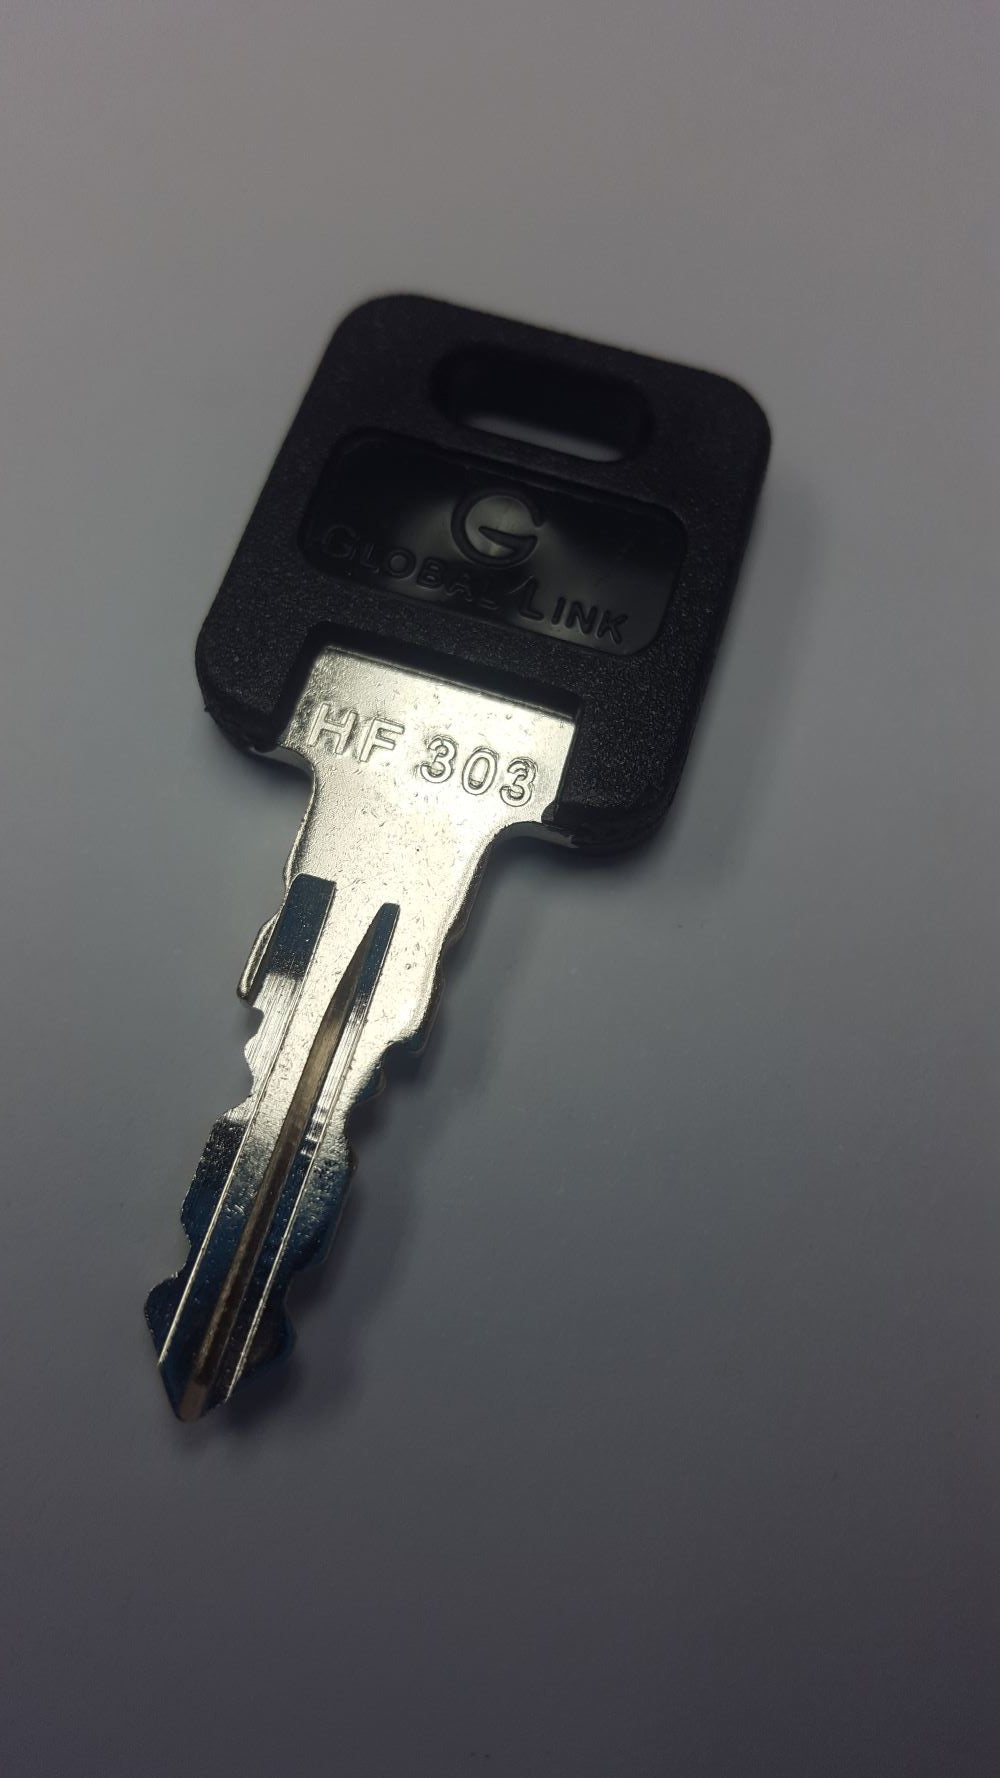 CPG KEY-HF-303 Pre-cut Stamped FIC Replacemnt HF303 Key